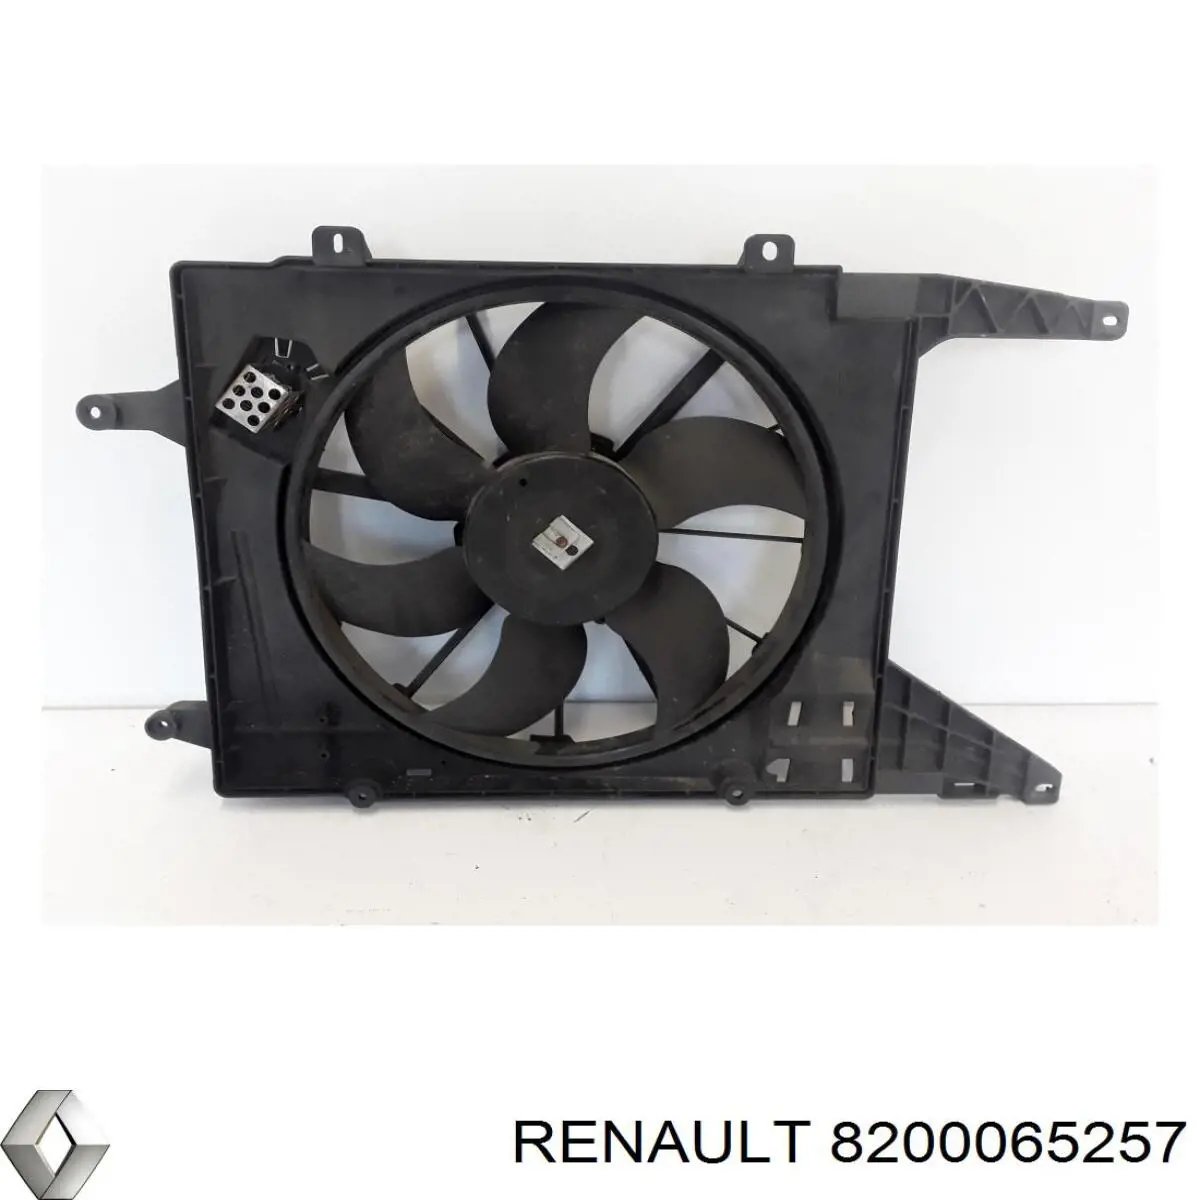 8200065257 Renault (RVI) difusor de radiador, ventilador de refrigeración, condensador del aire acondicionado, completo con motor y rodete